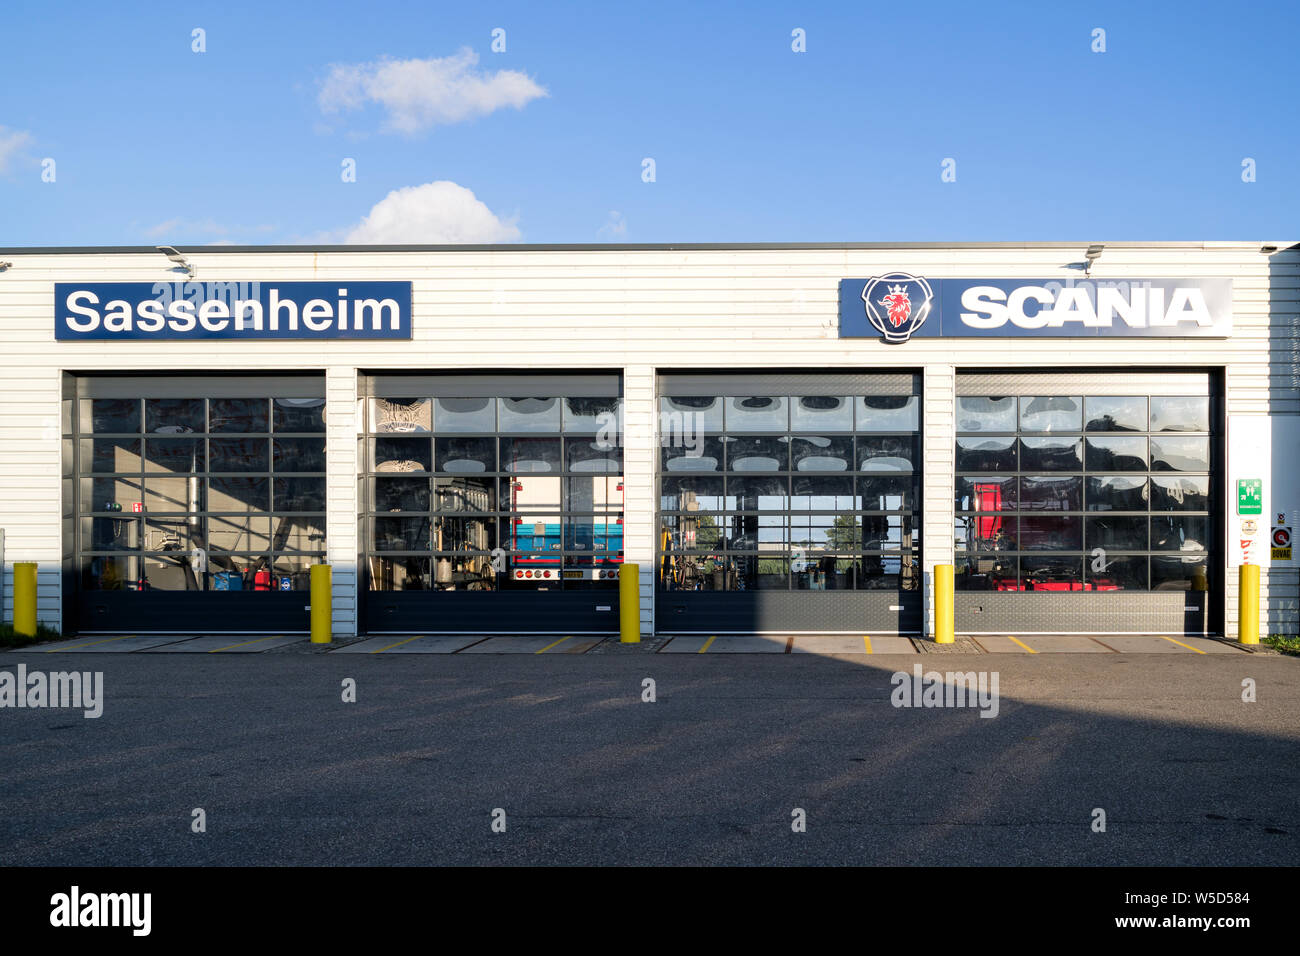 Scania Garage in Sassenheim, Niederlande. Scania AB ist ein schwedischer Hersteller von Nutzfahrzeugen. Stockfoto